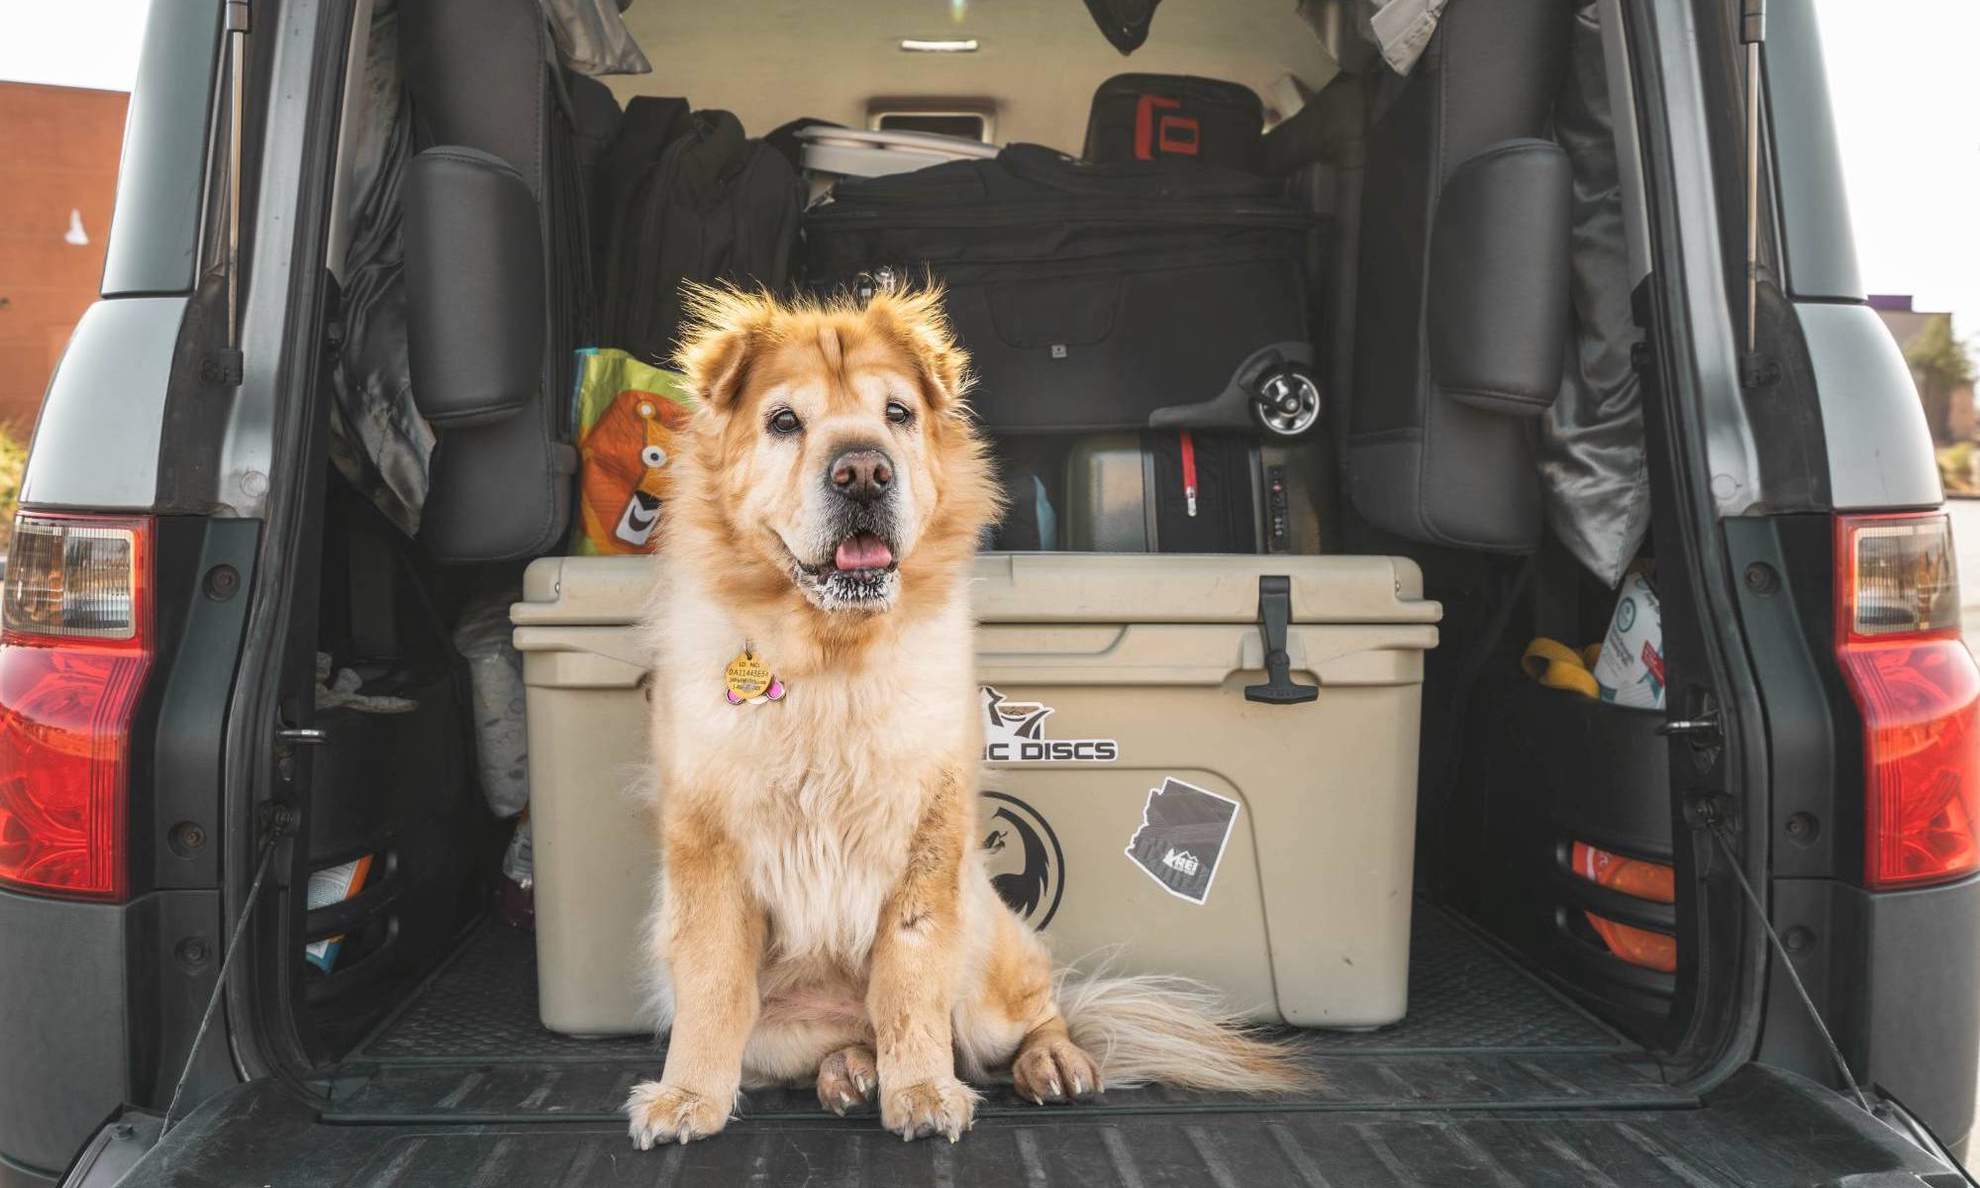 Багажник авто, в котором лежит куча вещей и сидит собака